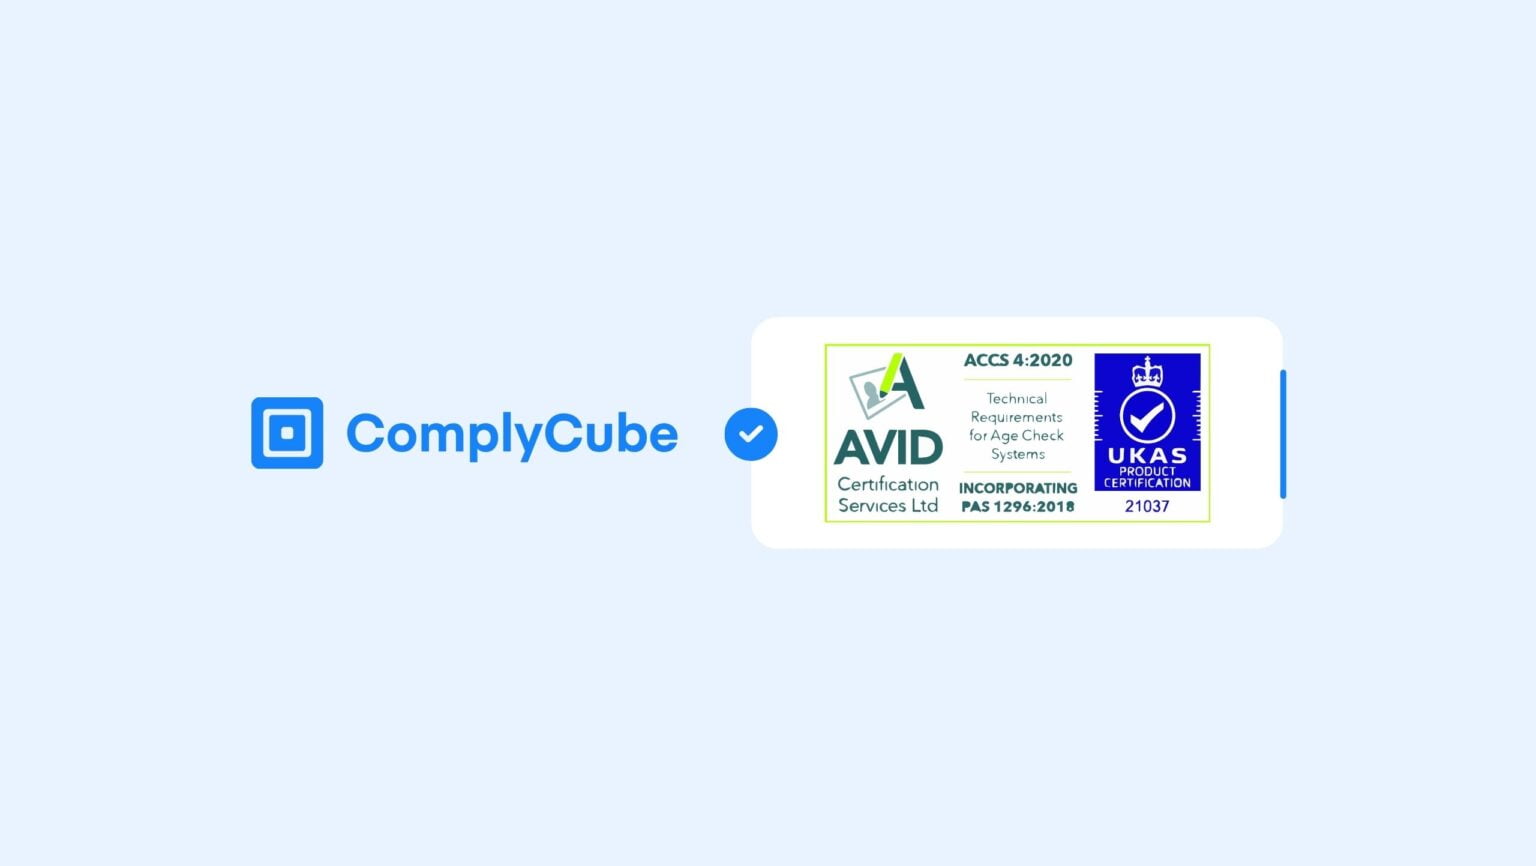 تحصل ComplyCube على شهادة ACCS للتحقق من العمر من خلال نظام شهادة التحقق من العمر